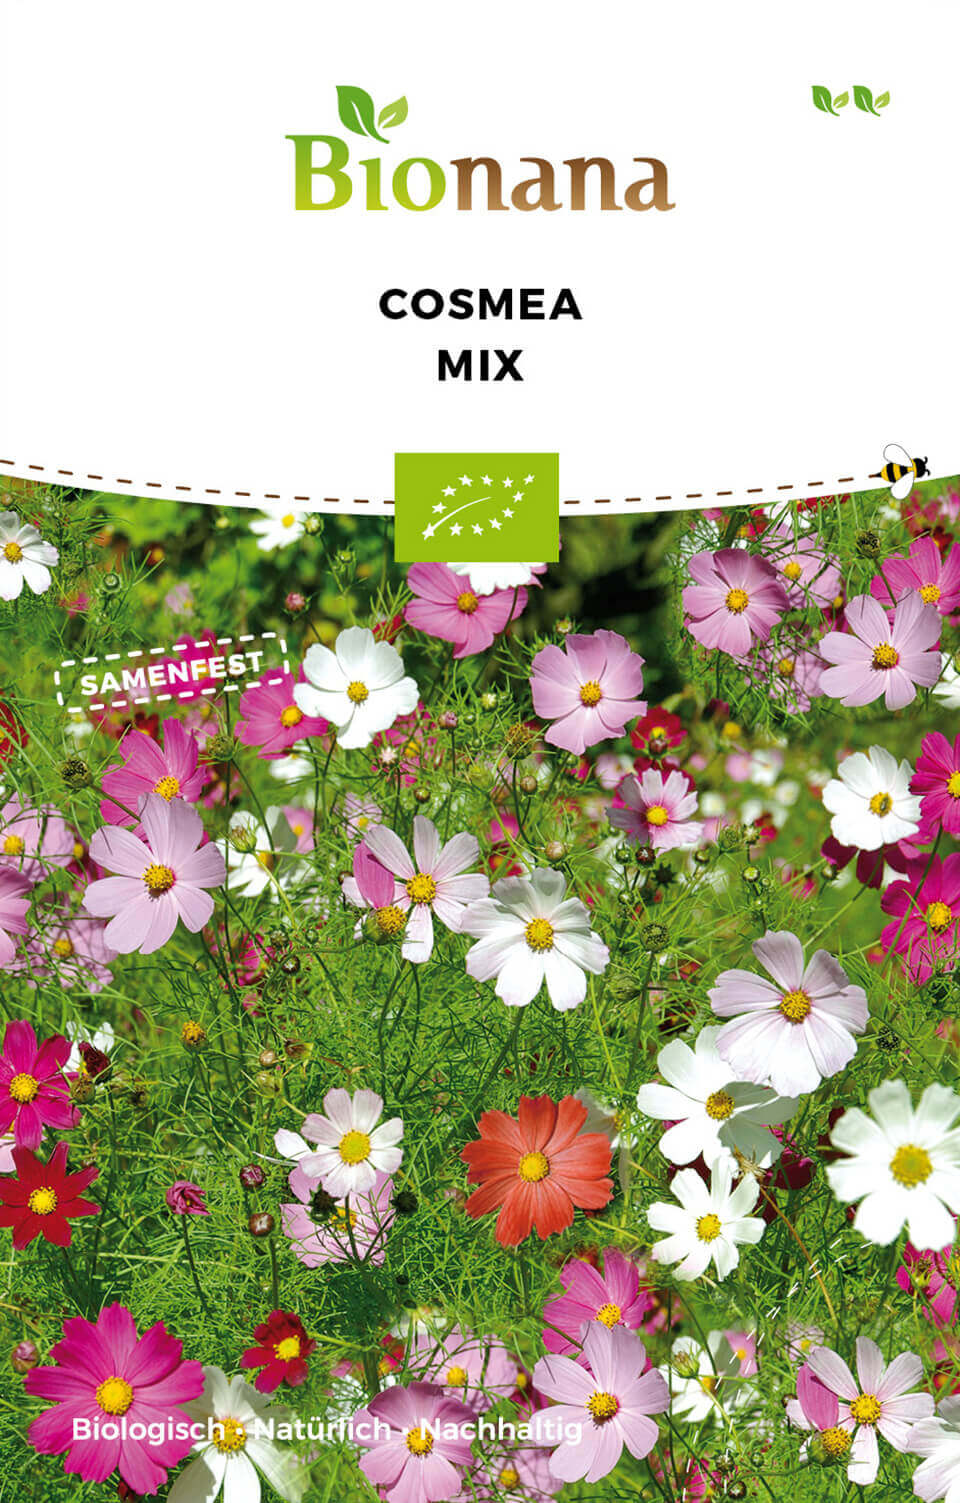 Cosmea Mix | BIO Cosmeasamen von Bionana